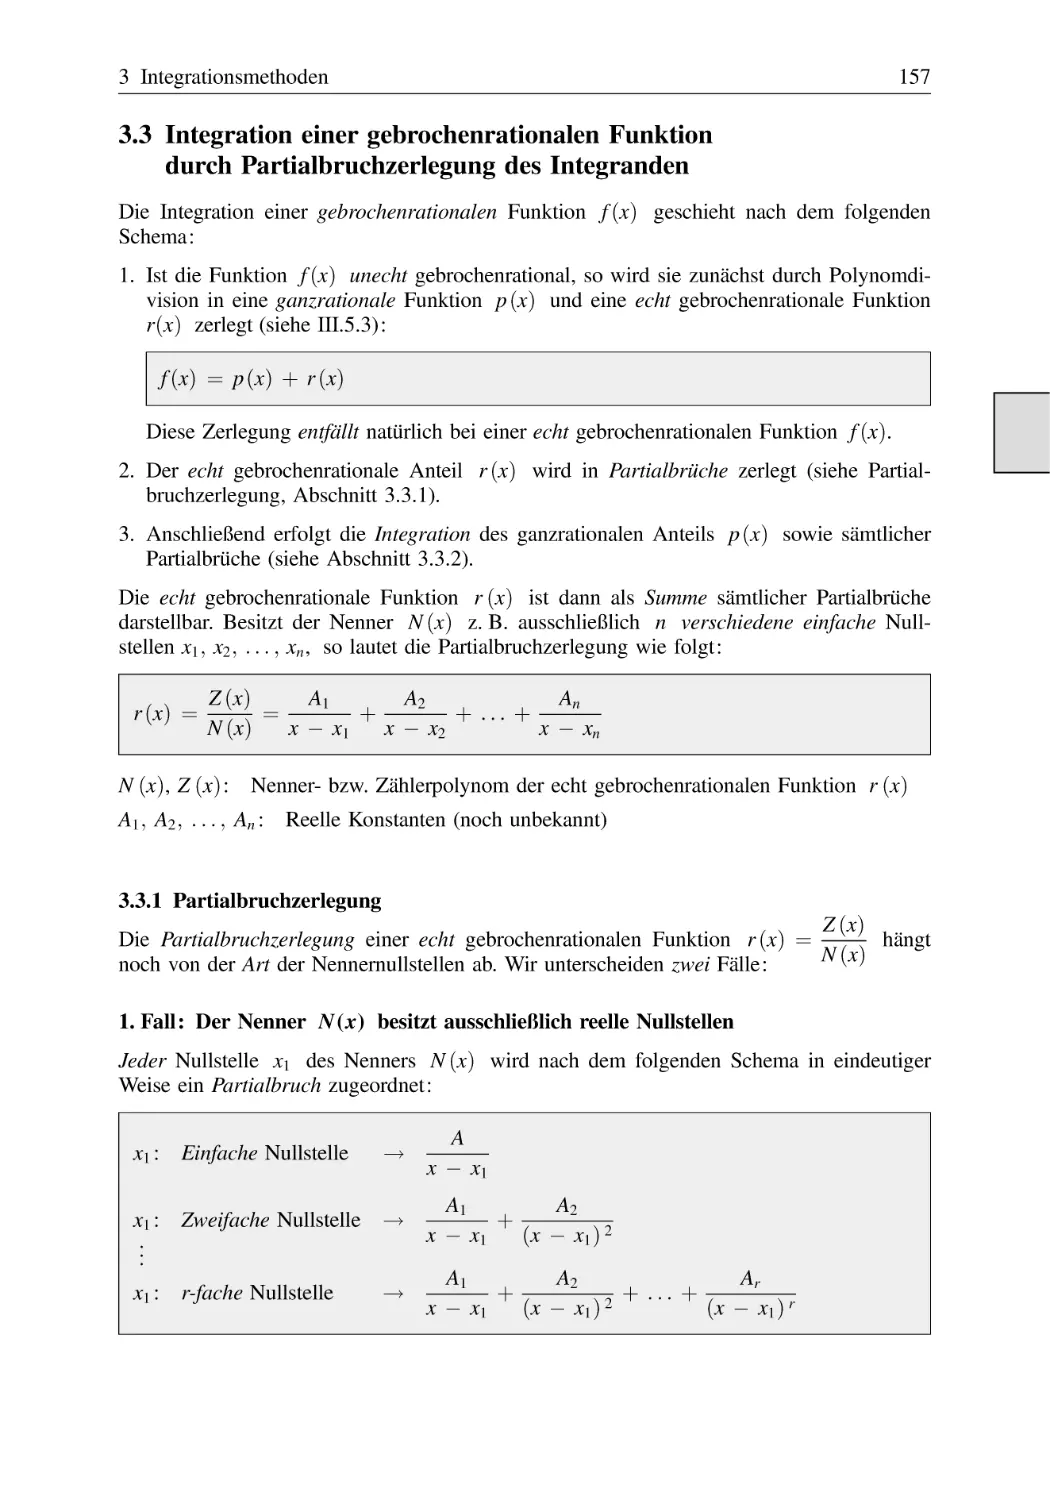 3.3 Integration einer gebrochenrationalen Funktion durch Partialbruchzerlegung des Integranden
3.3.1 Partialbruchzerlegung